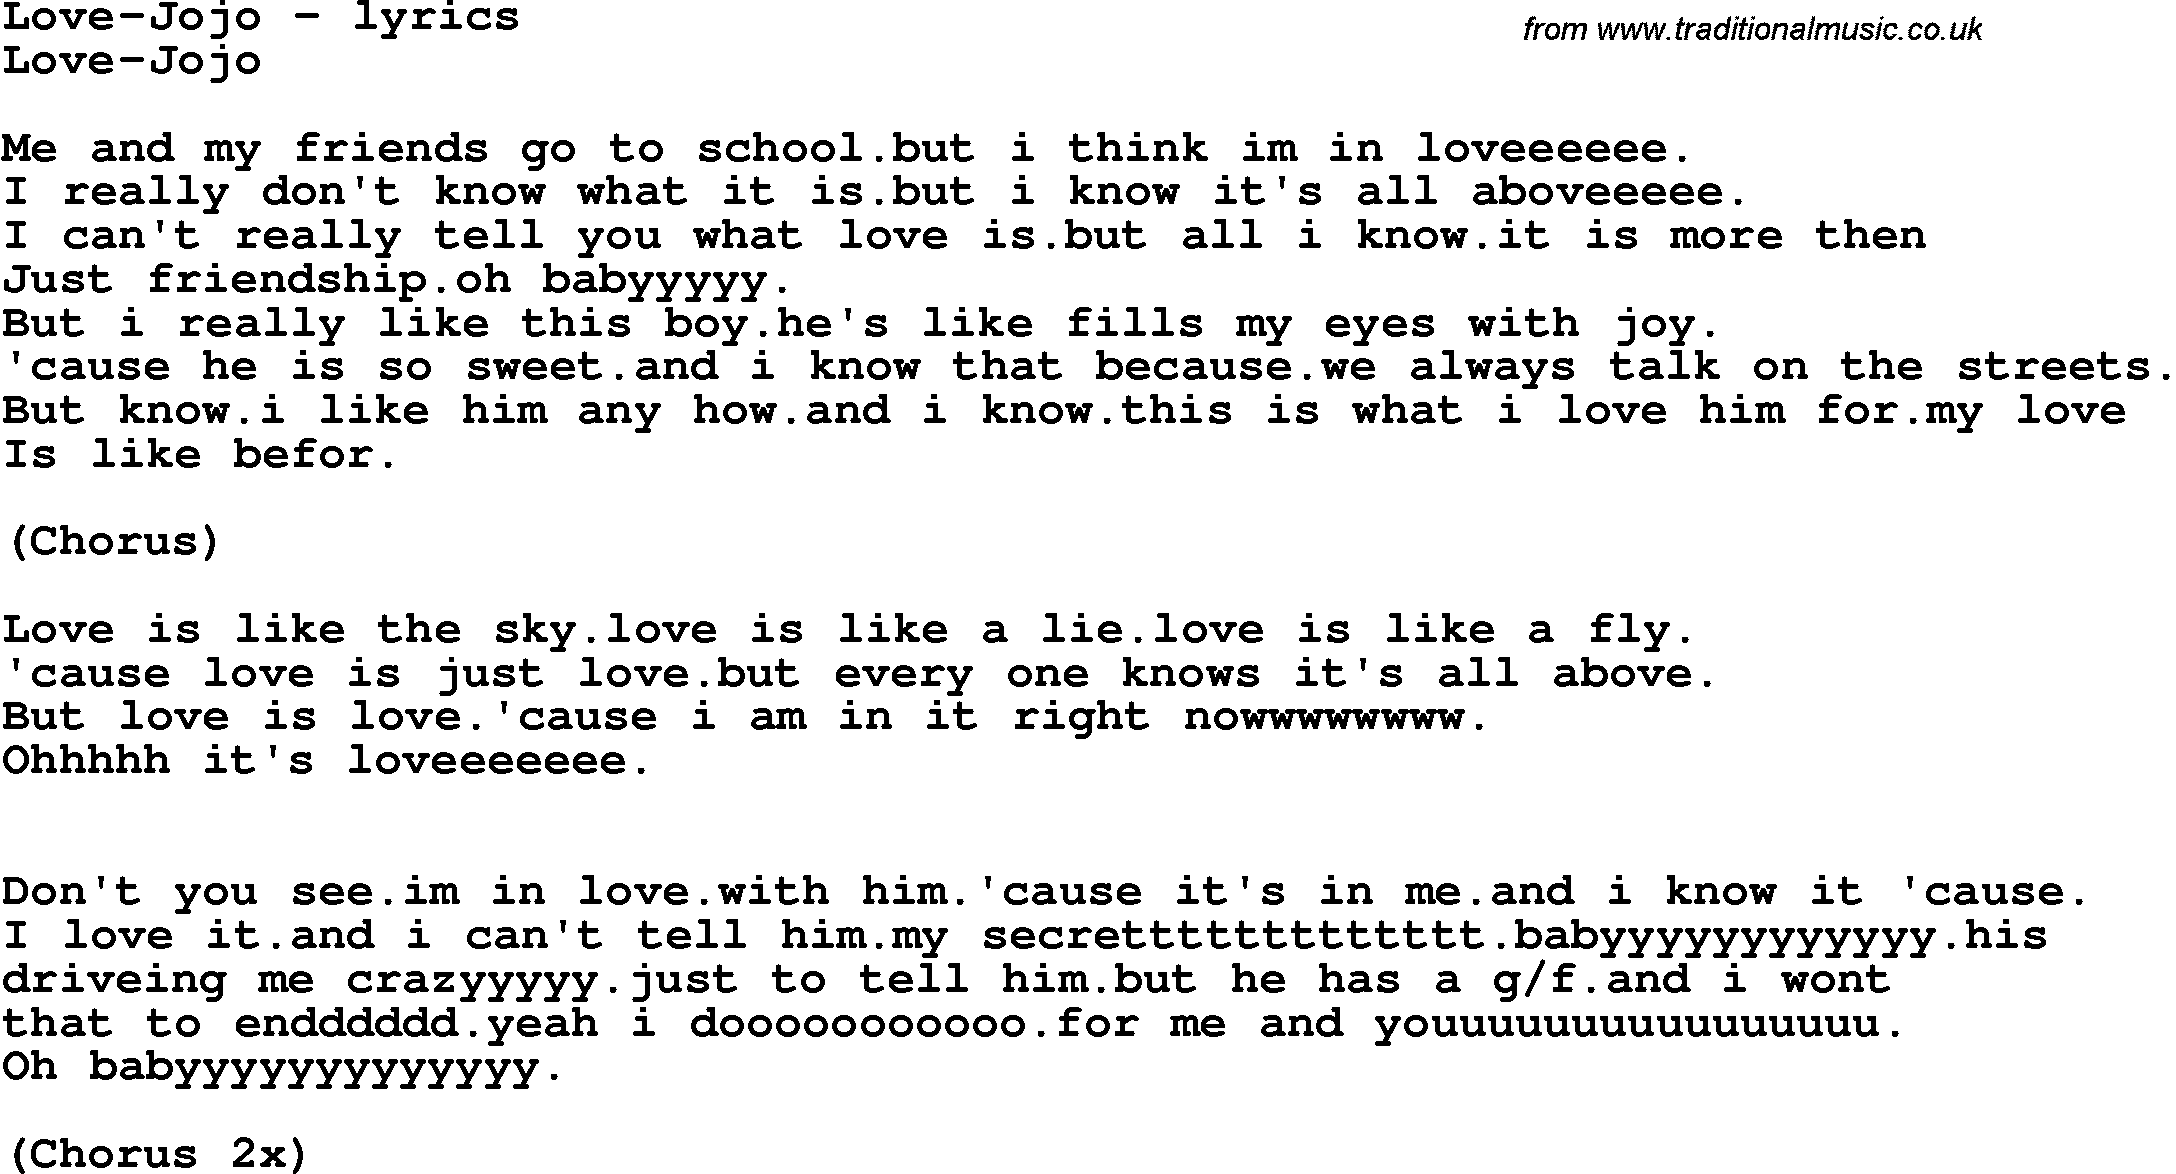 Love Song Lyrics for: Love-Jojo